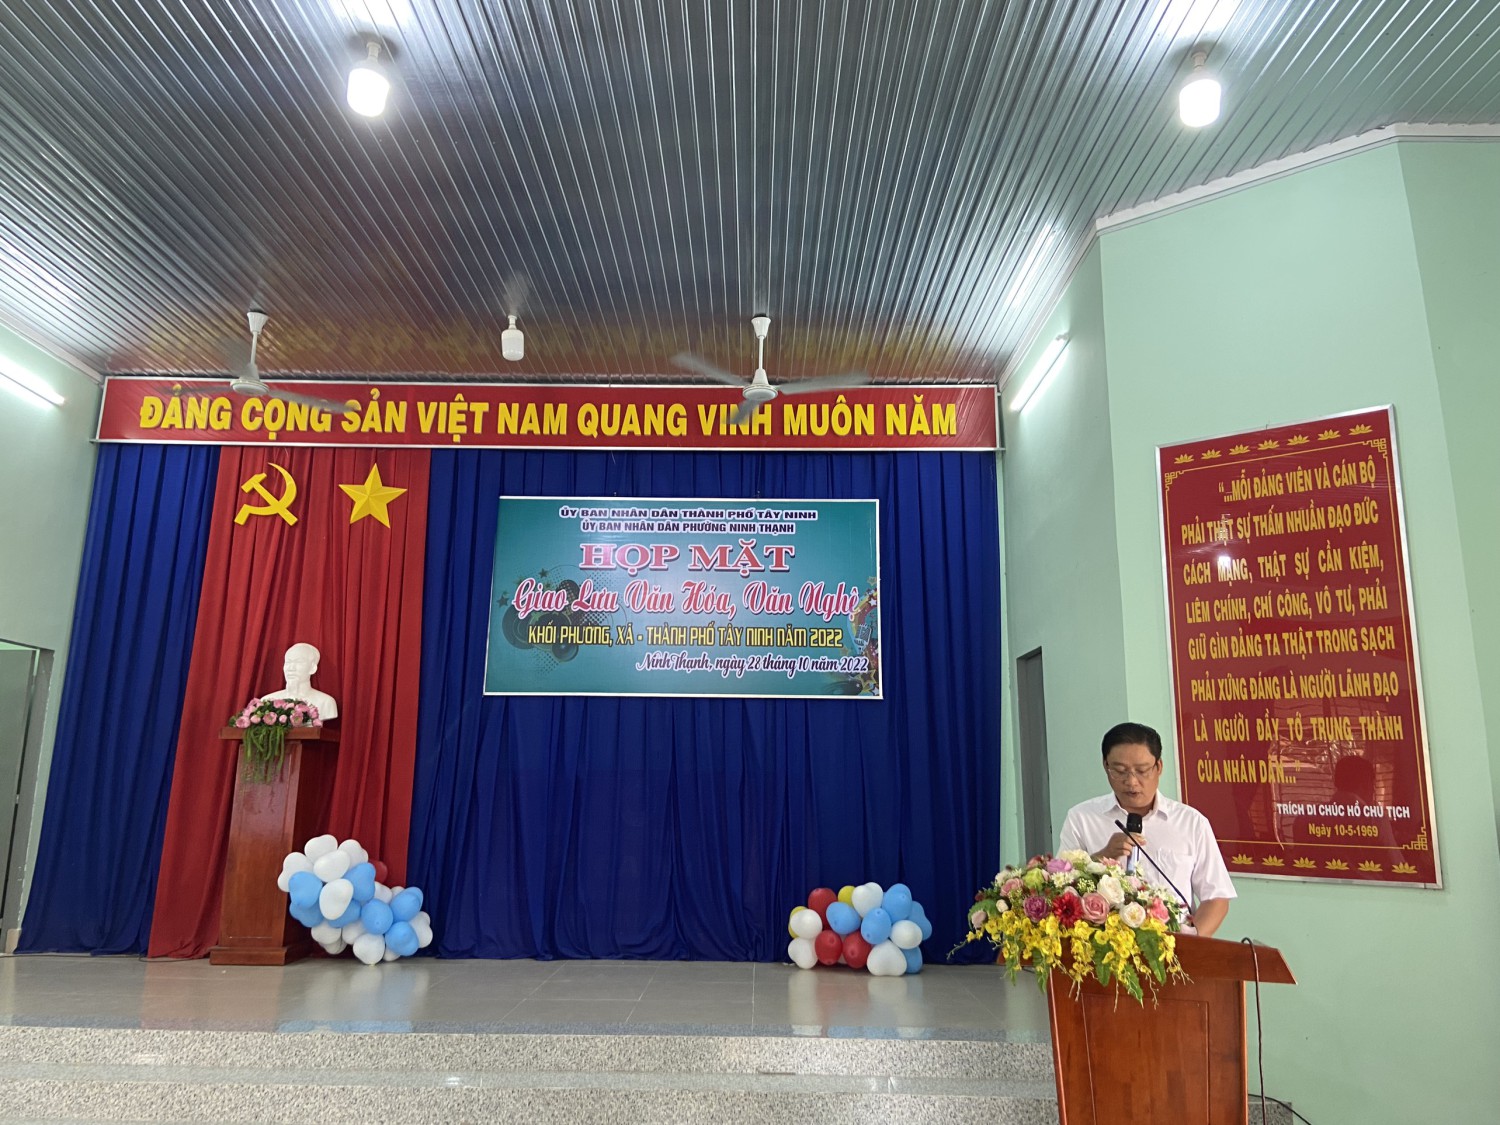 Ông Nguyễn Quang Vinh - Chủ tịch UBND phường Ninh Thạnh, đại diện khối trưởng -Khối thi đua phường,xã năm 2022 lên phát biểu khai mạc chương trình